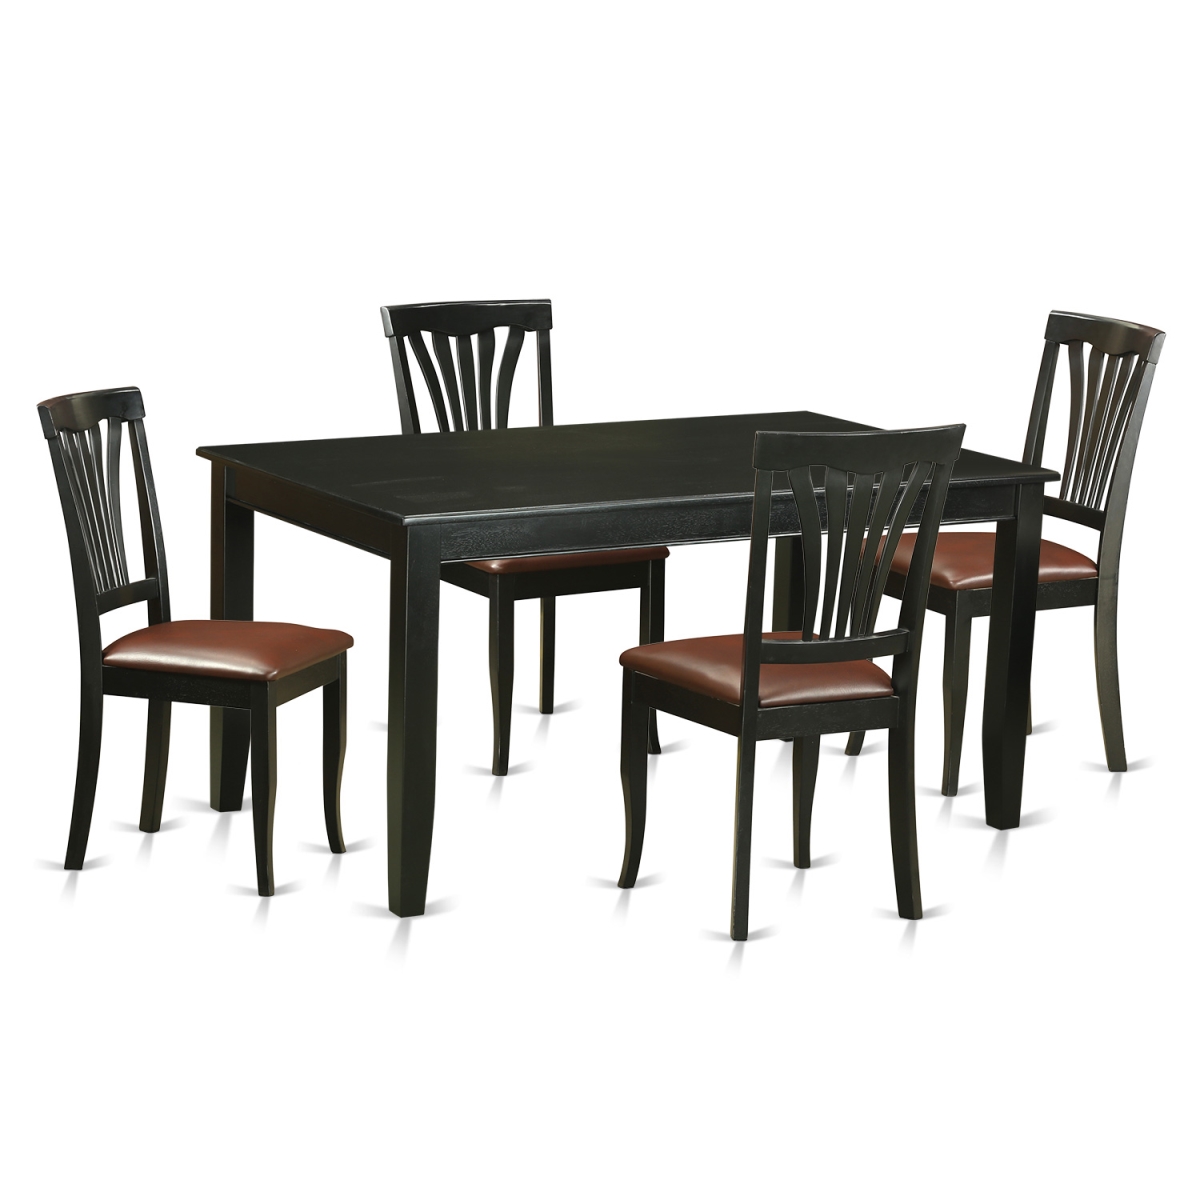 Duav5-blk-lc Faux Leather Dinette Set - Kitchen Table & 4 Chairs, Black - 5 Piece